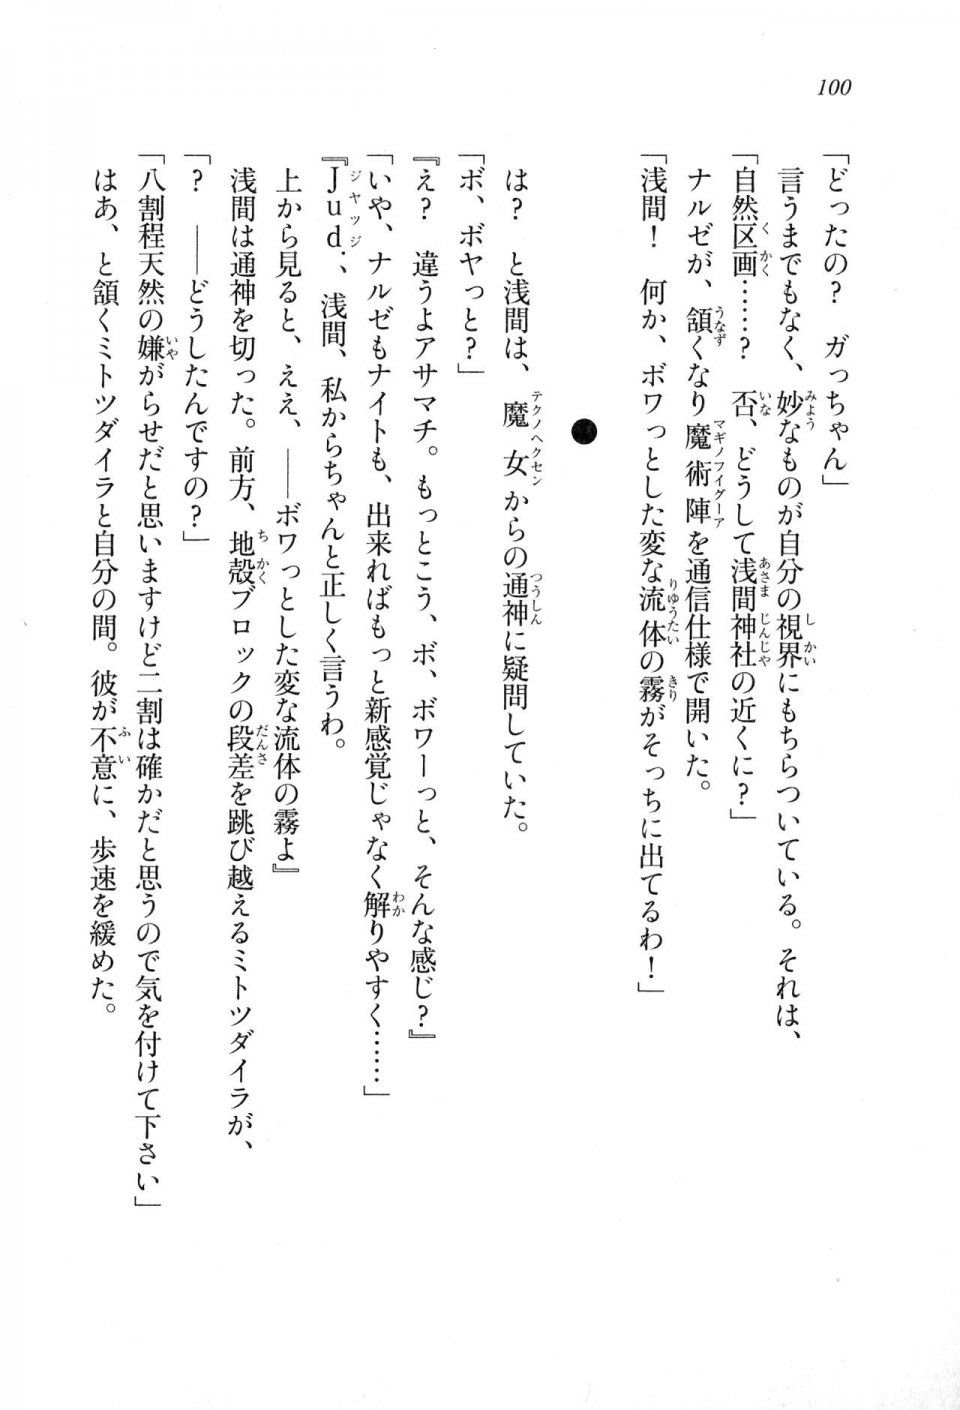 Kyoukai Senjou no Horizon LN Sidestory Vol 1 - Photo #98